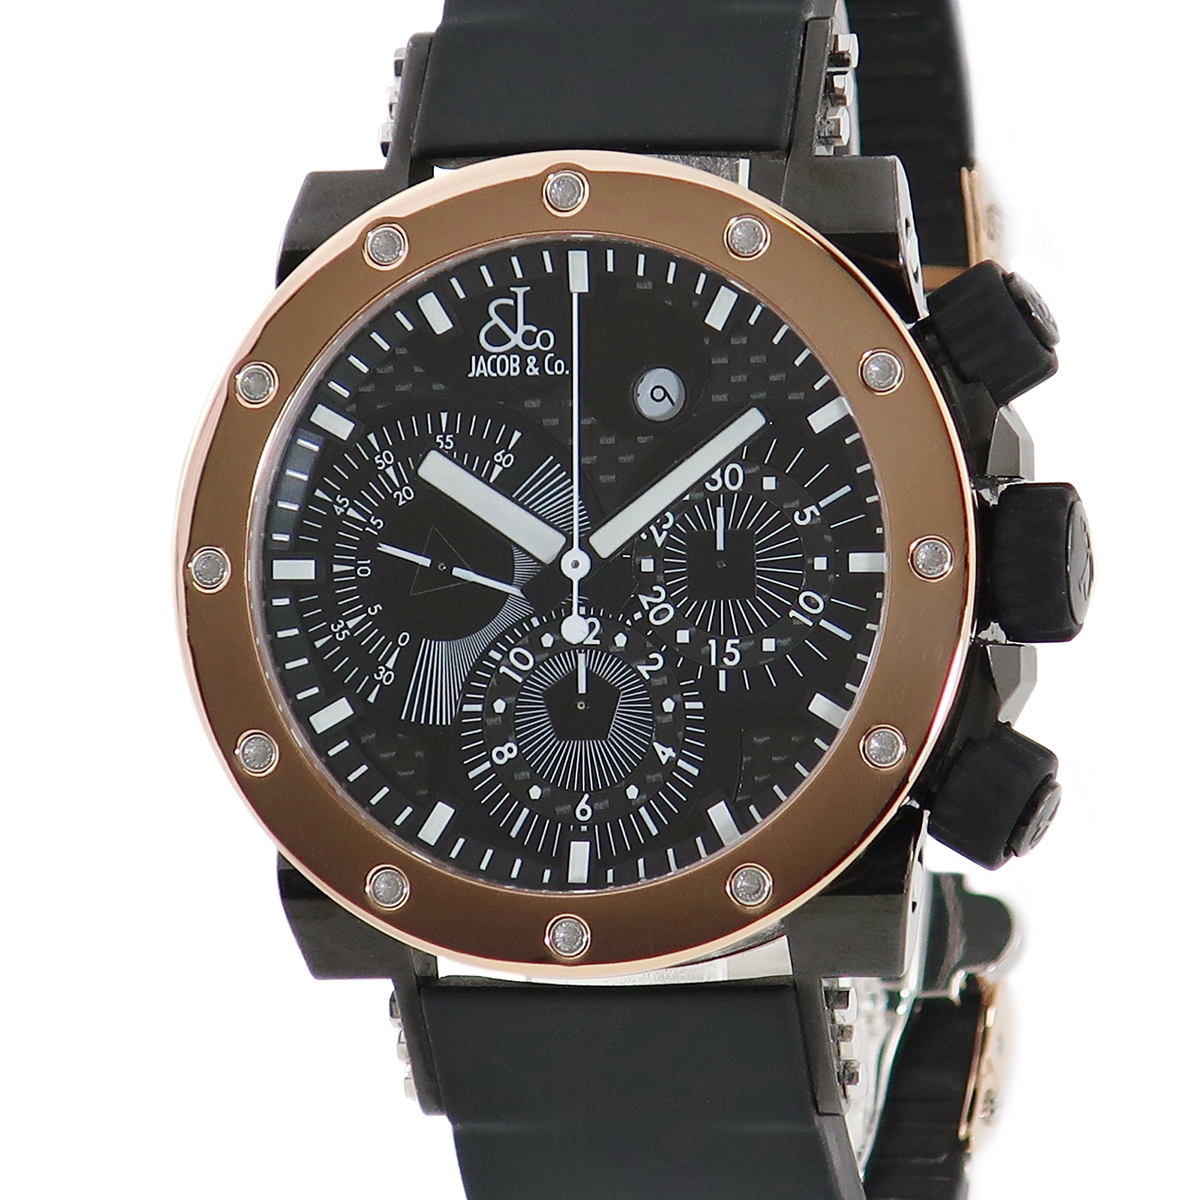 ジェイコブ JACOB エピック2 JC-E1 K18RG×SS コンビ 黒 バー メンズ 腕時計自動巻き ブラック 【中古】